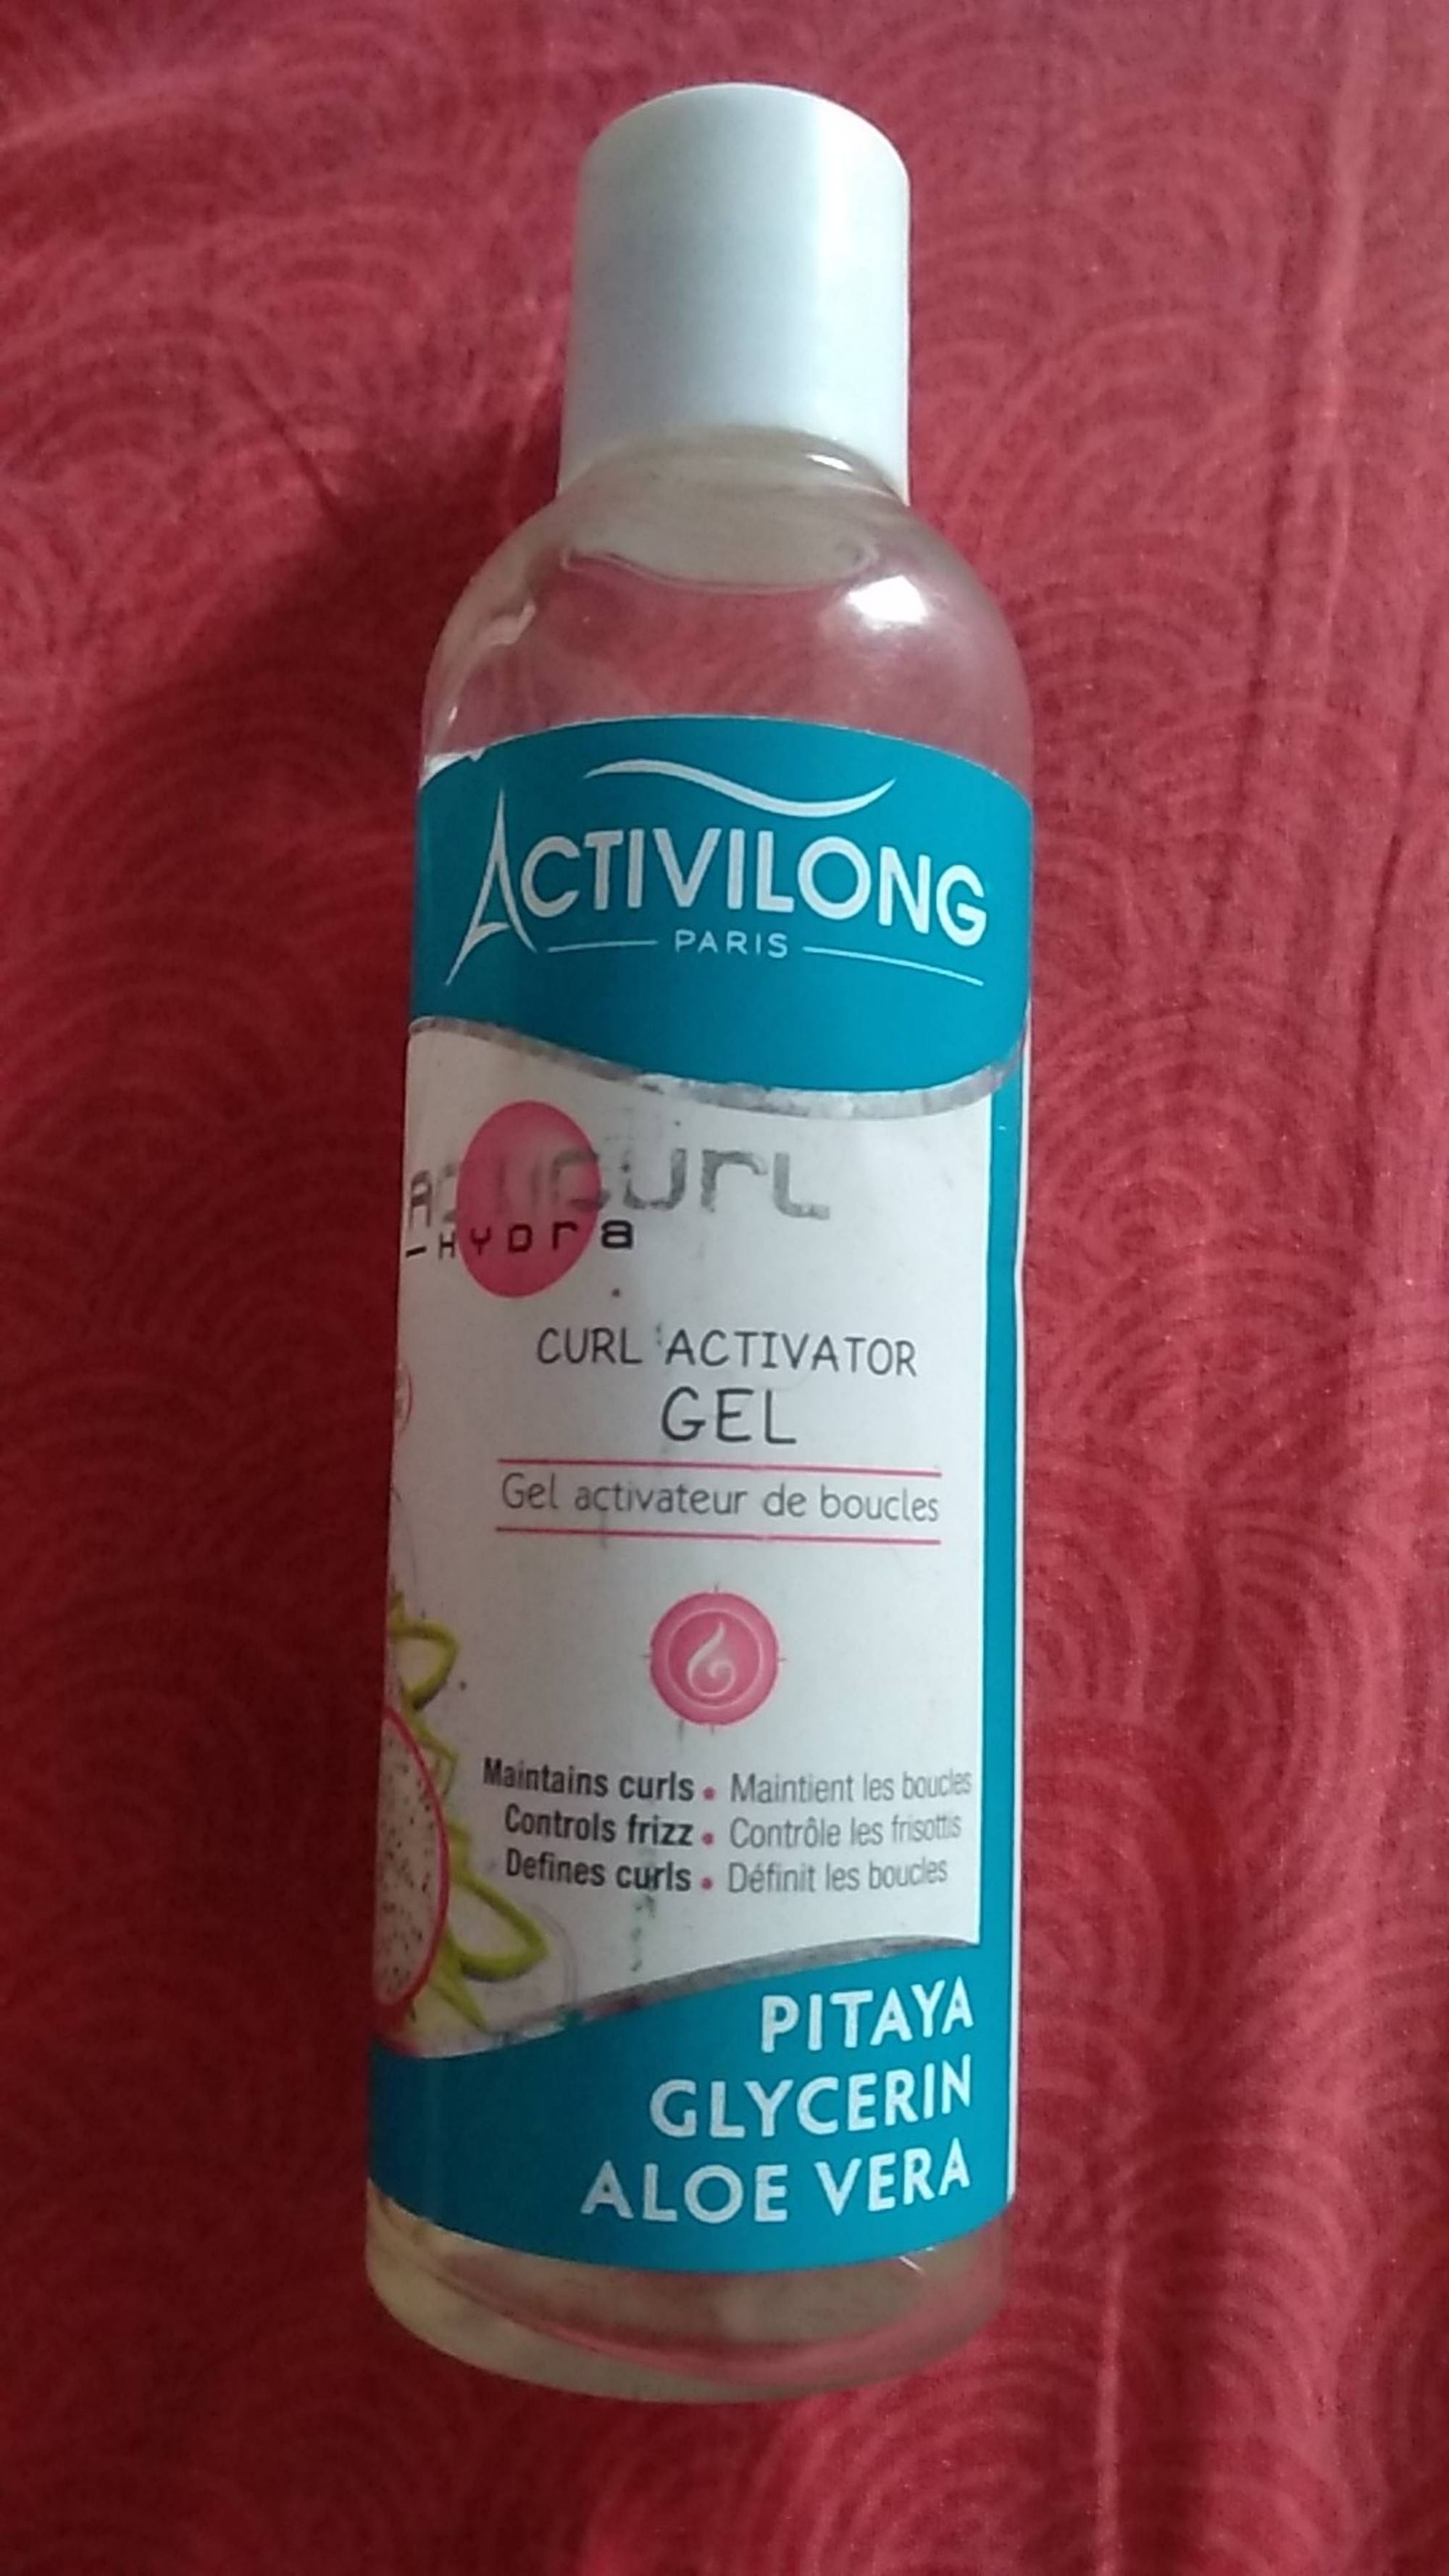 ACTIVILONG - Acticurl hydra - Gel activateur de boucles